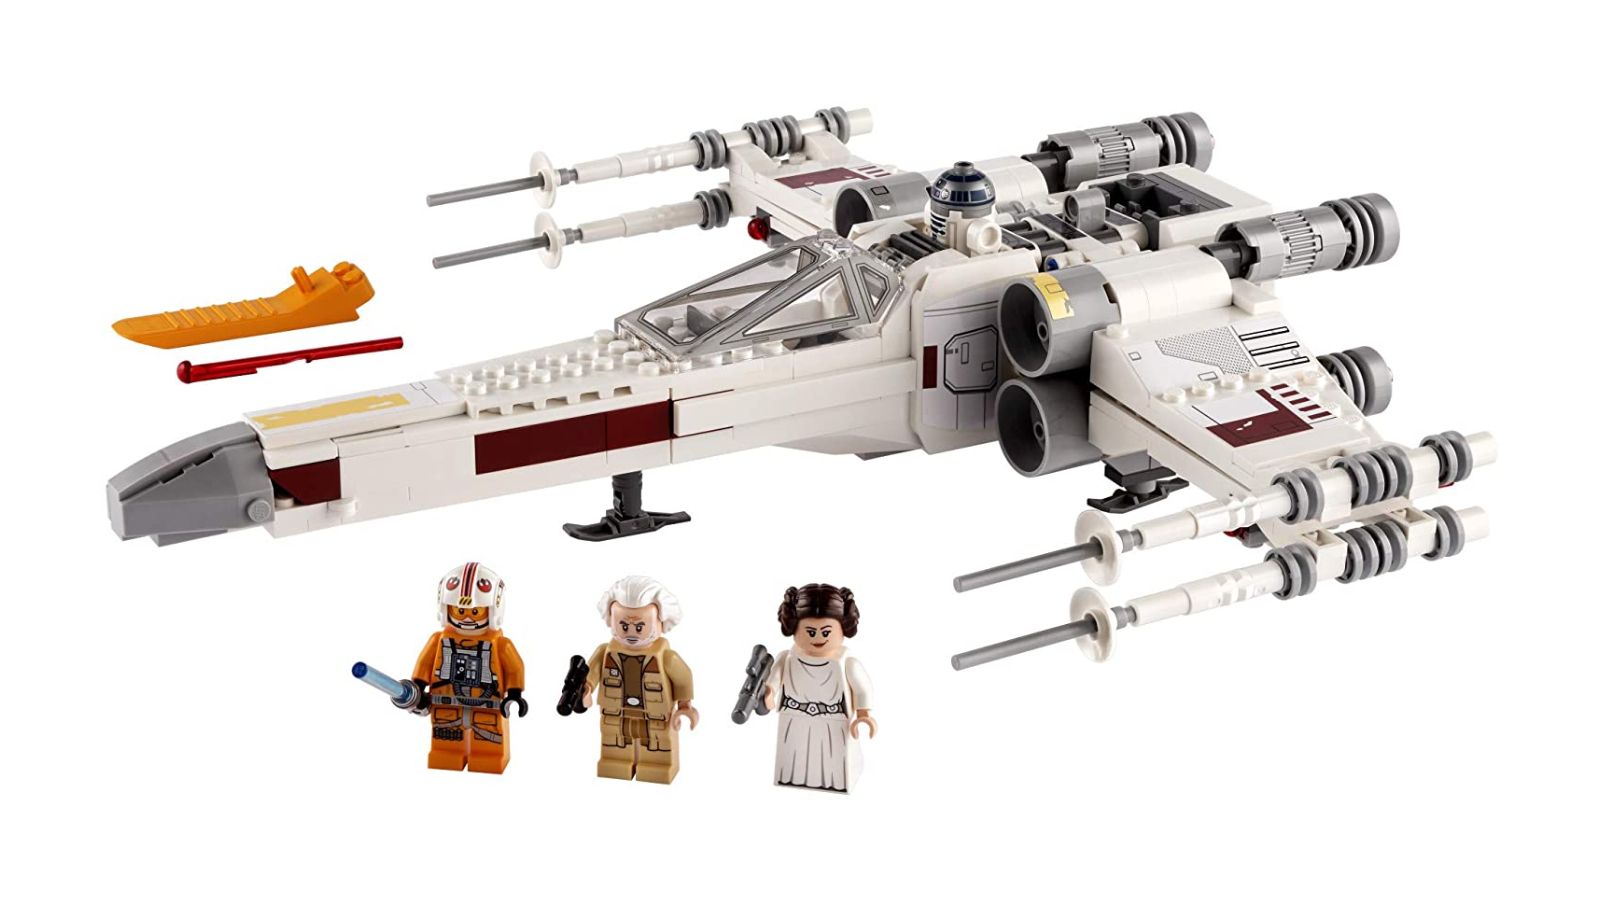 LEGO Star Wars Luke Skywalker's X-Wing set